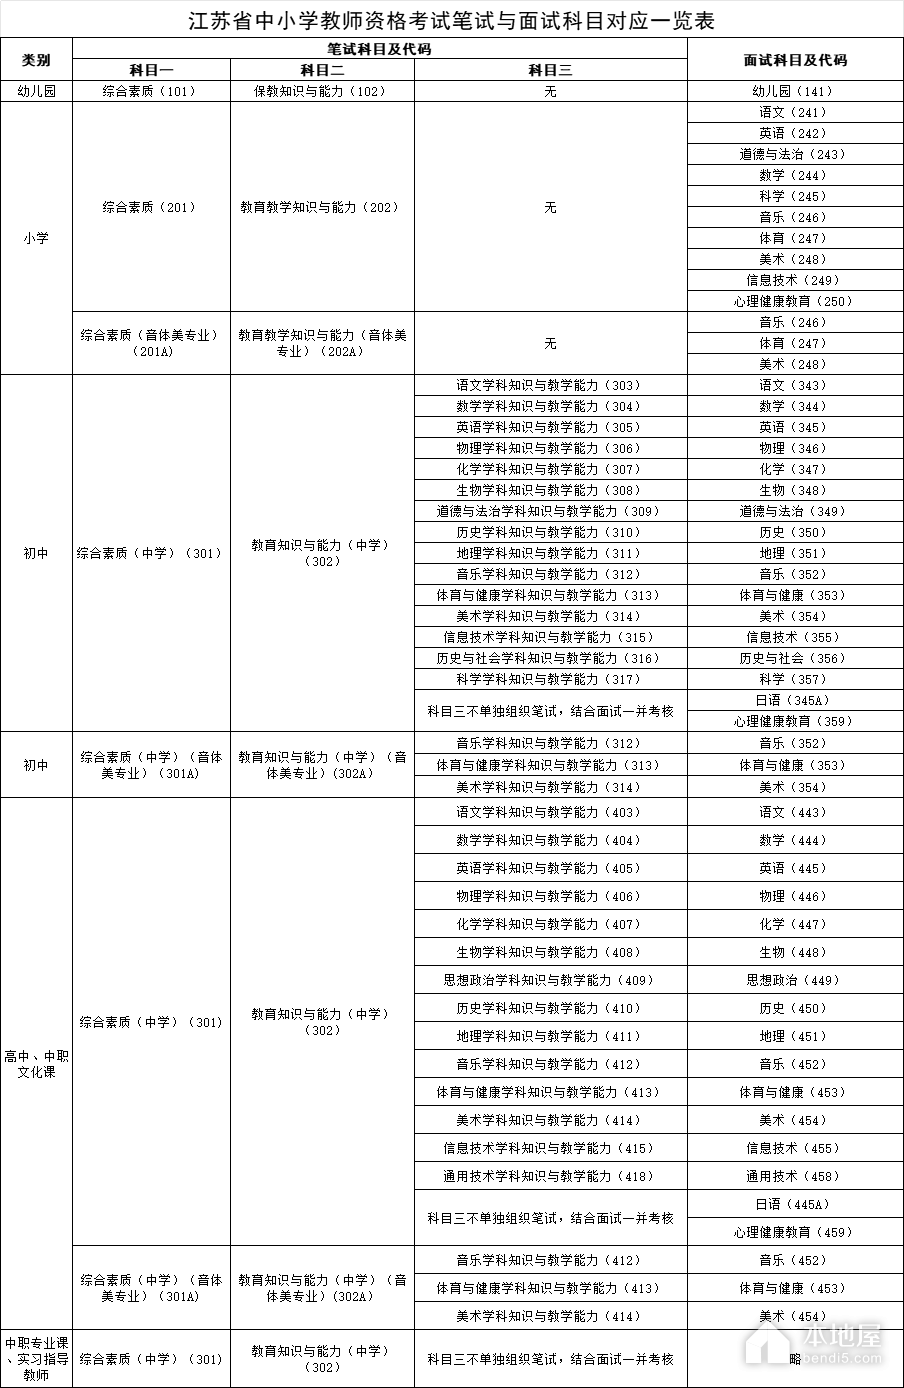 江蘇省中小學教師資格考試筆試與面試科目對應一覽表